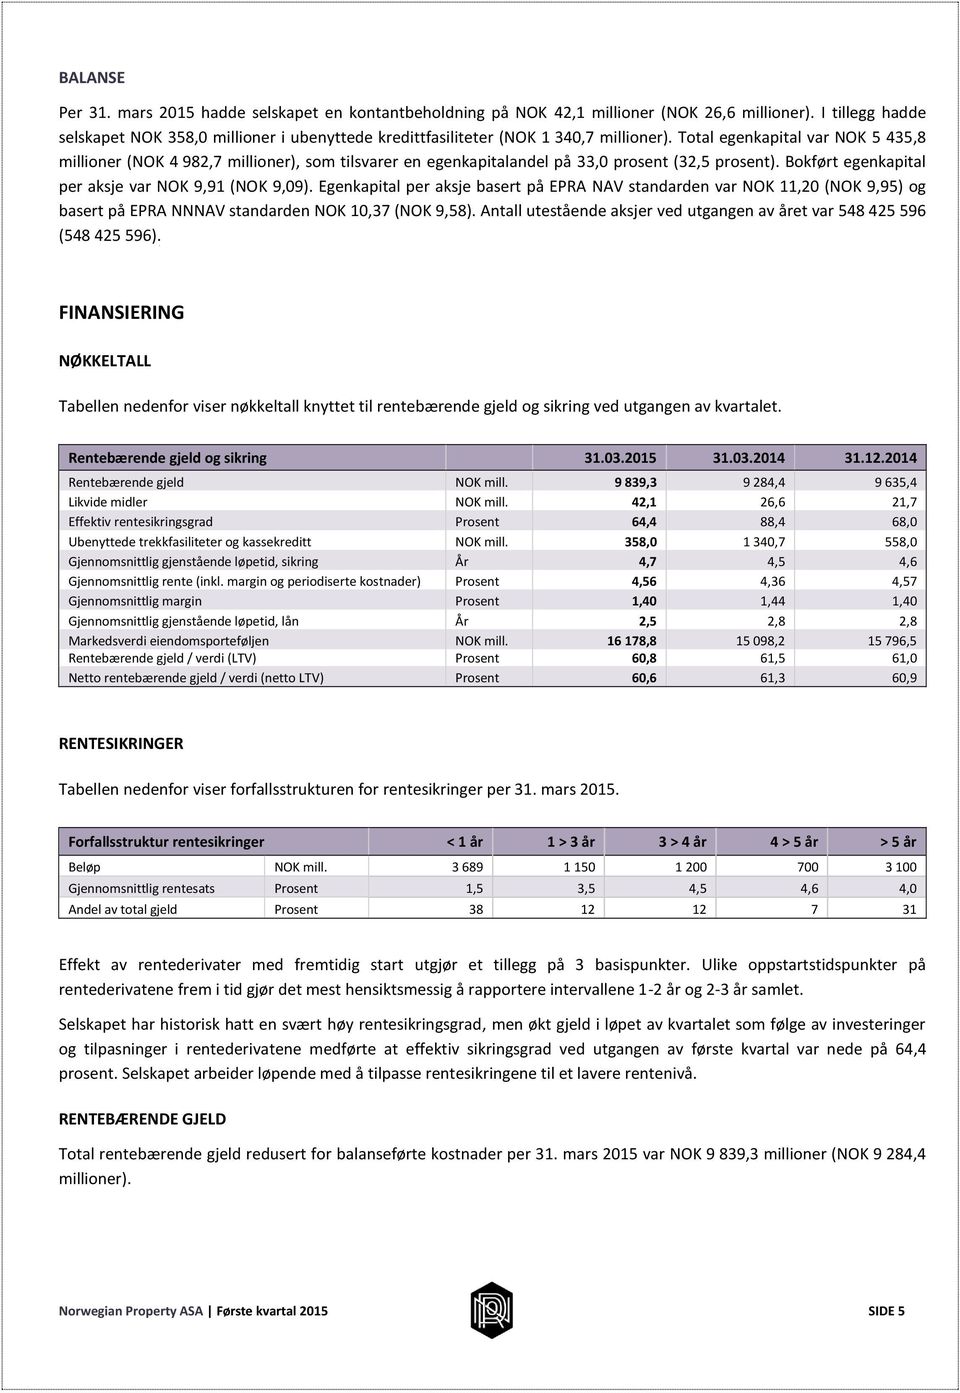 Total egenkapital var NOK 5 435,8 millioner (NOK 4 982,7 millioner), som tilsvarer en egenkapitalandel på 33,0 prosent (32,5 prosent). Bokført egenkapital per aksje var NOK 9,91 (NOK 9,09).